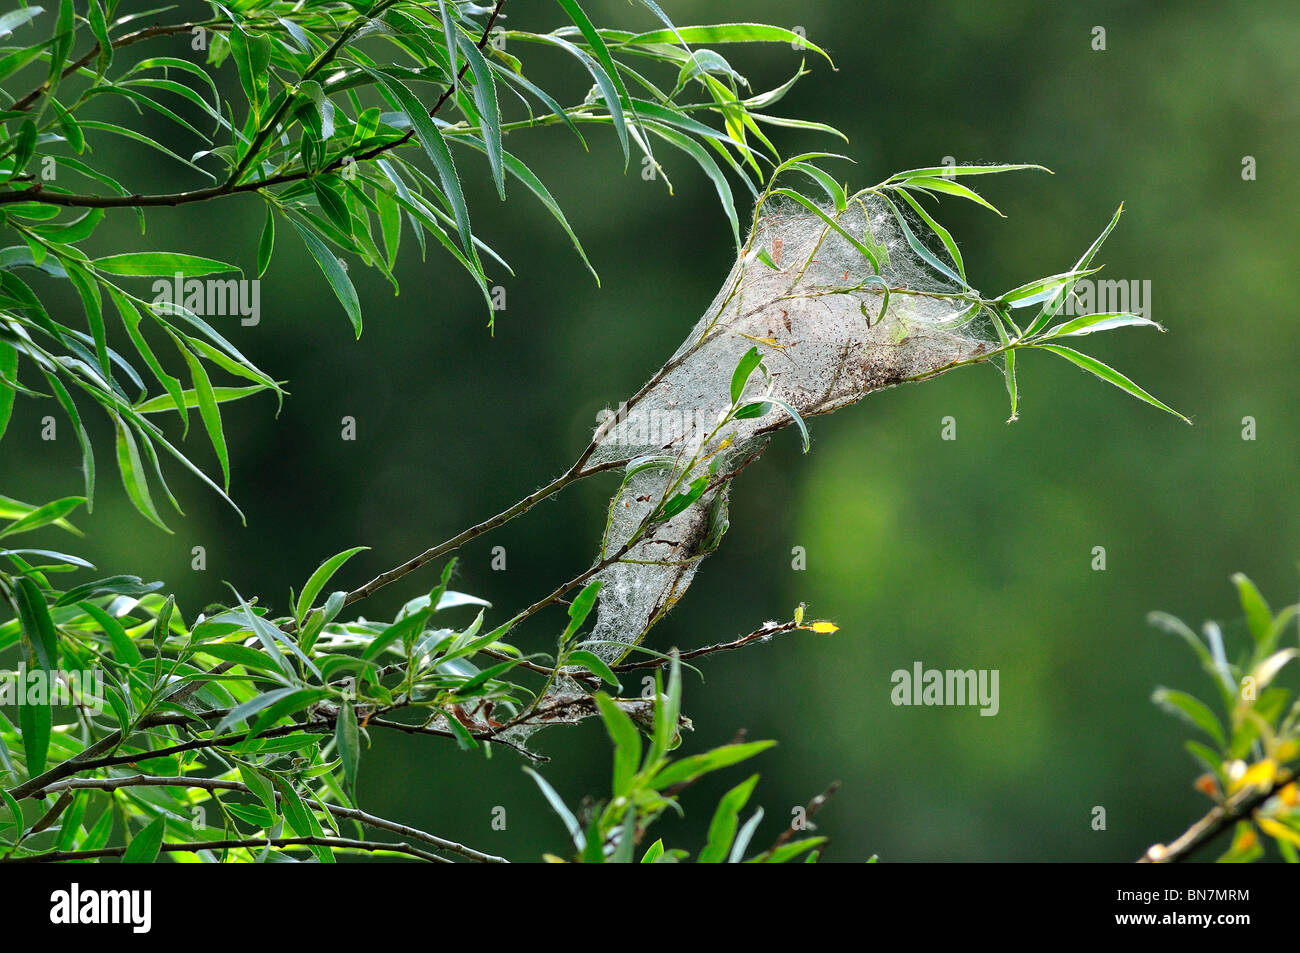 Les araignées nid web plein de minuscules araignées dans willow tree Banque D'Images